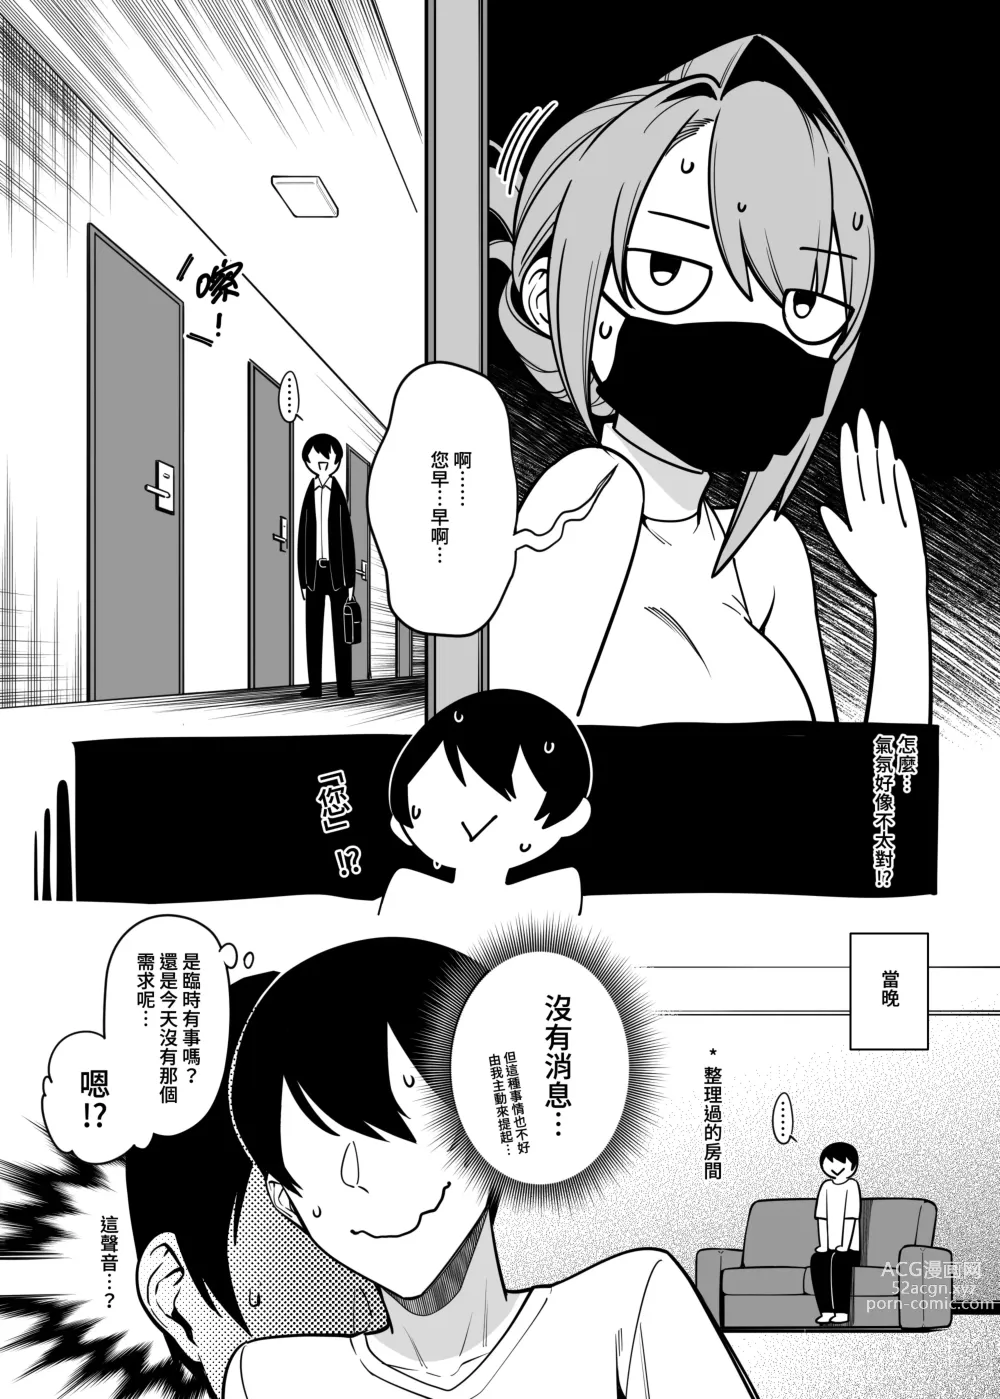 Page 31 of doujinshi comic